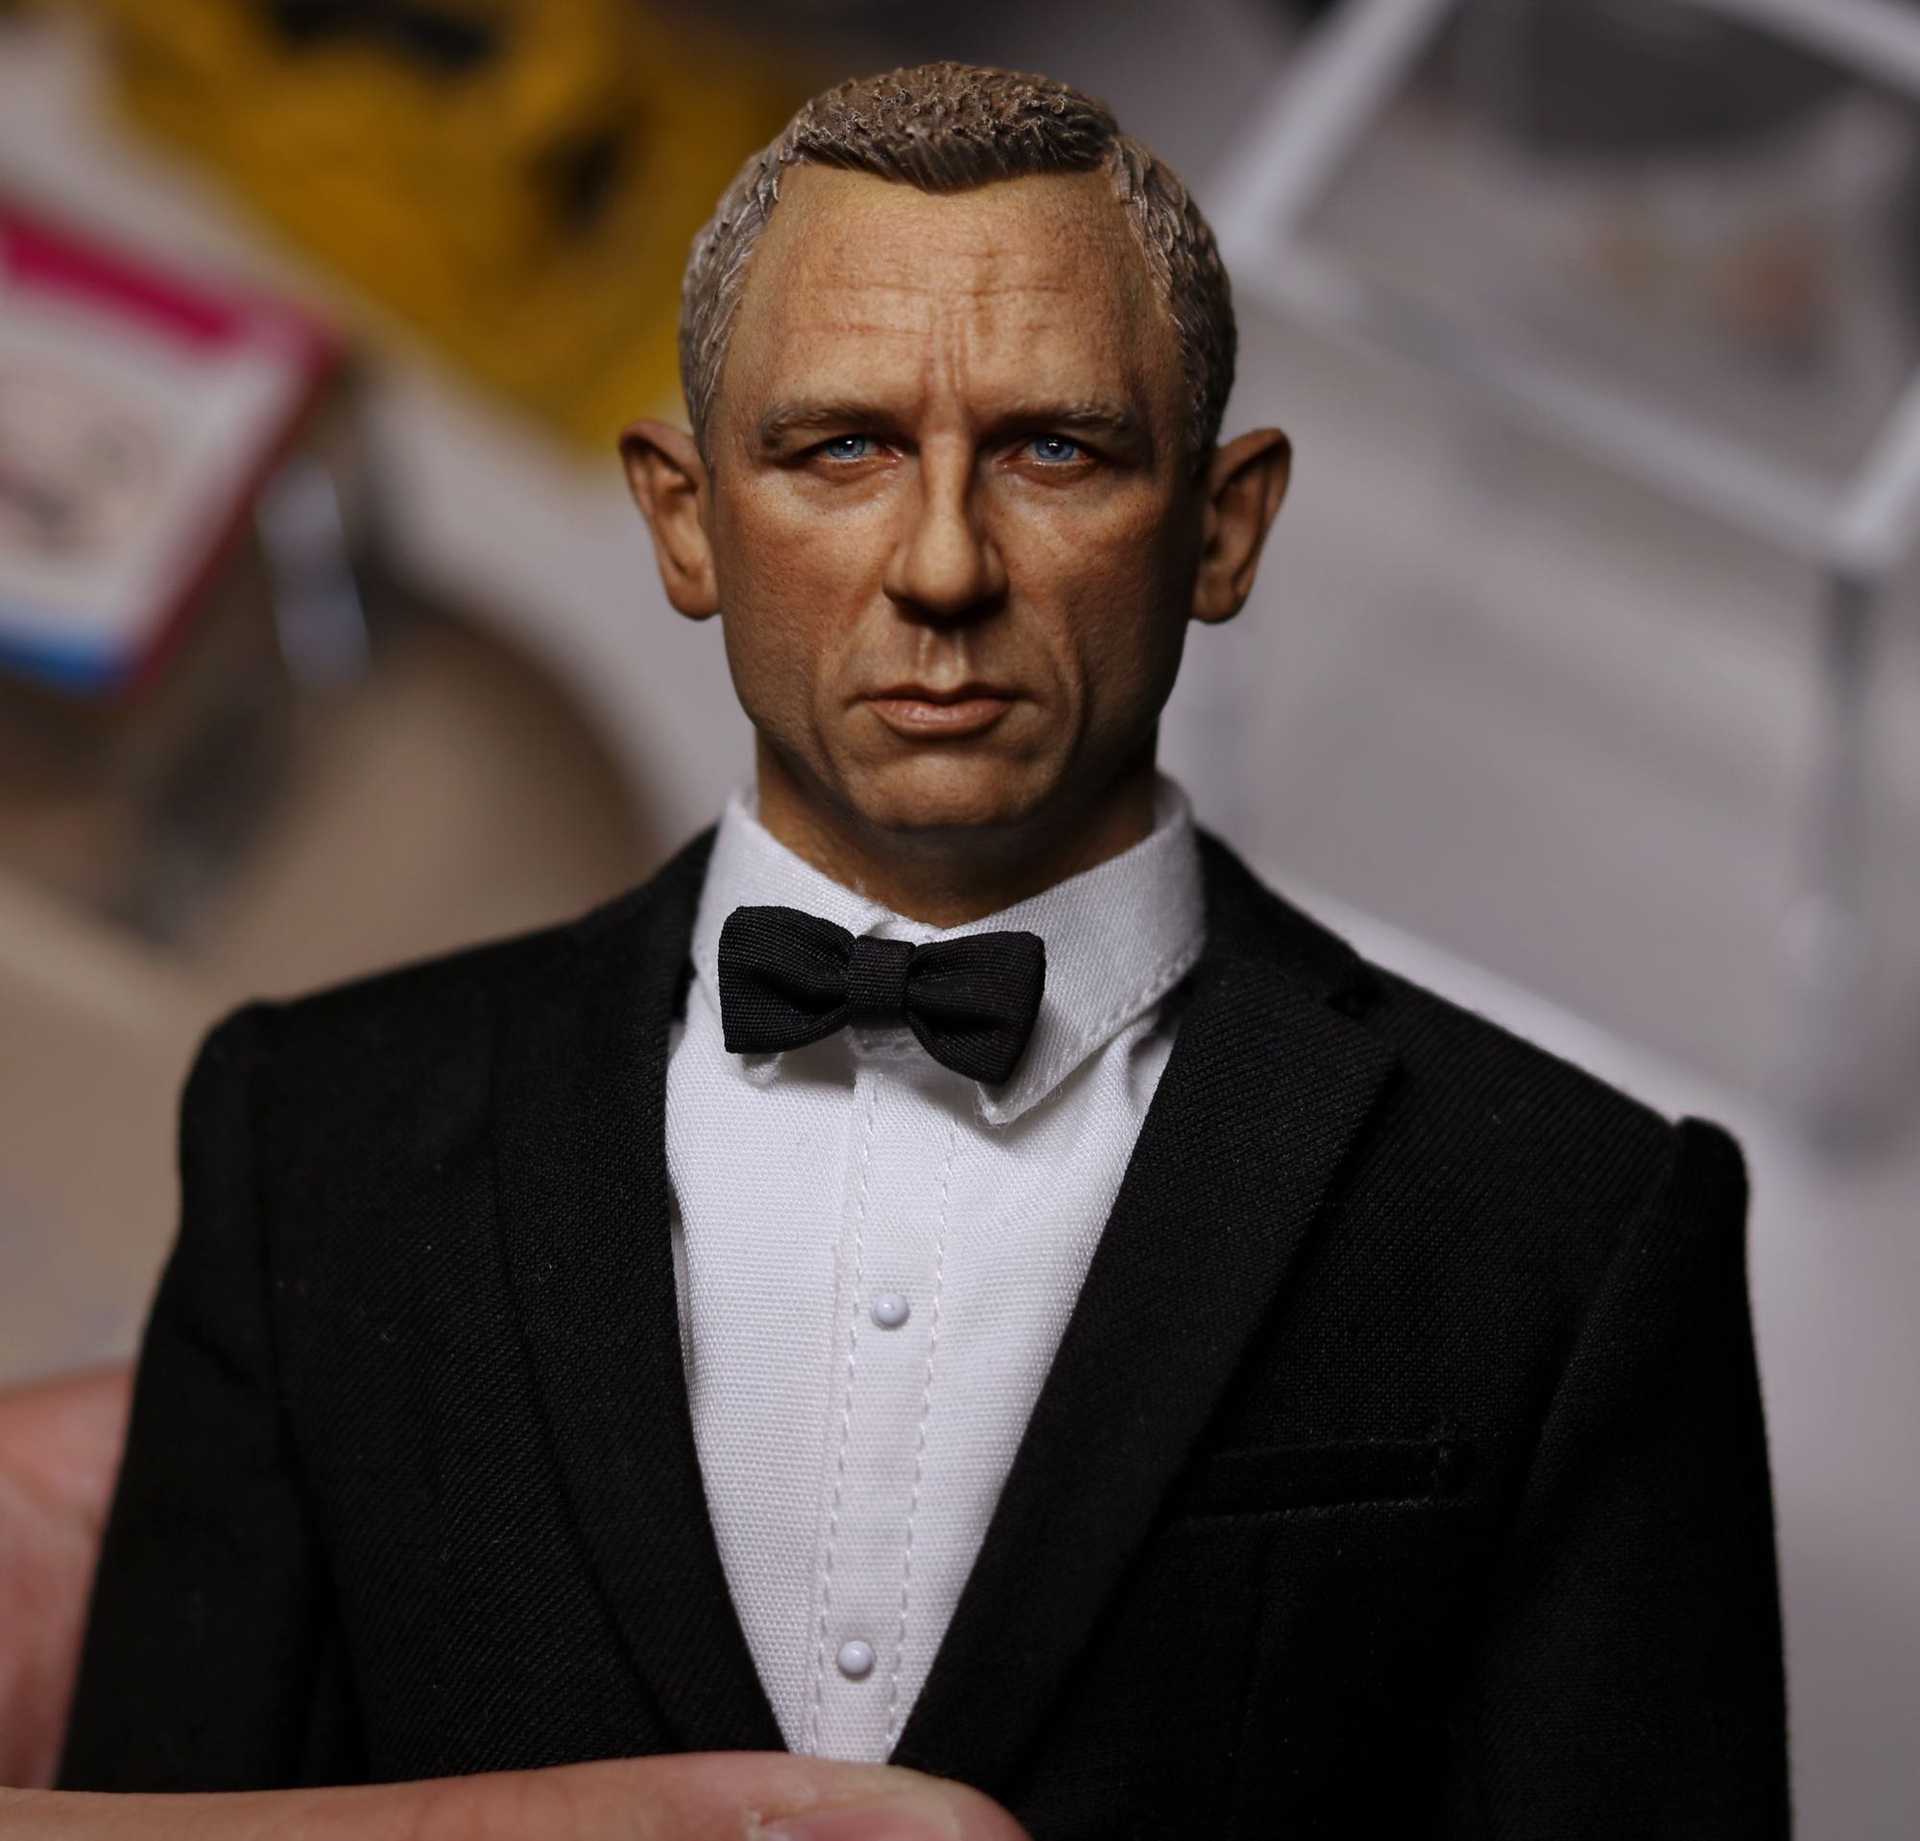 007 casino royale bad guy